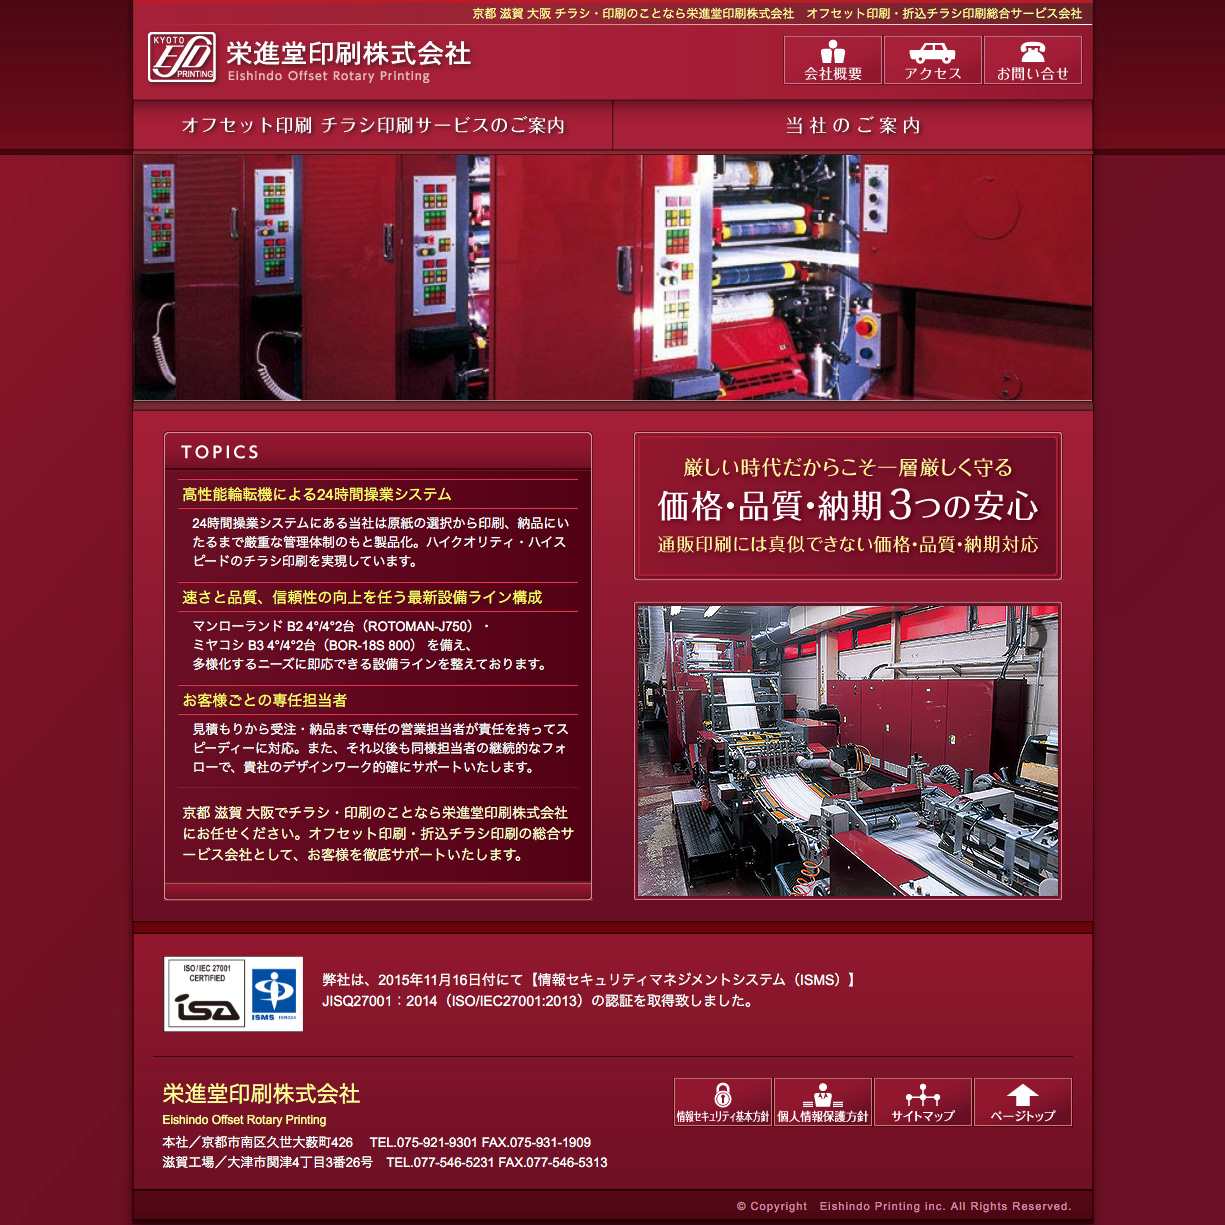 栄進堂印刷株式会社 ウェブサイト